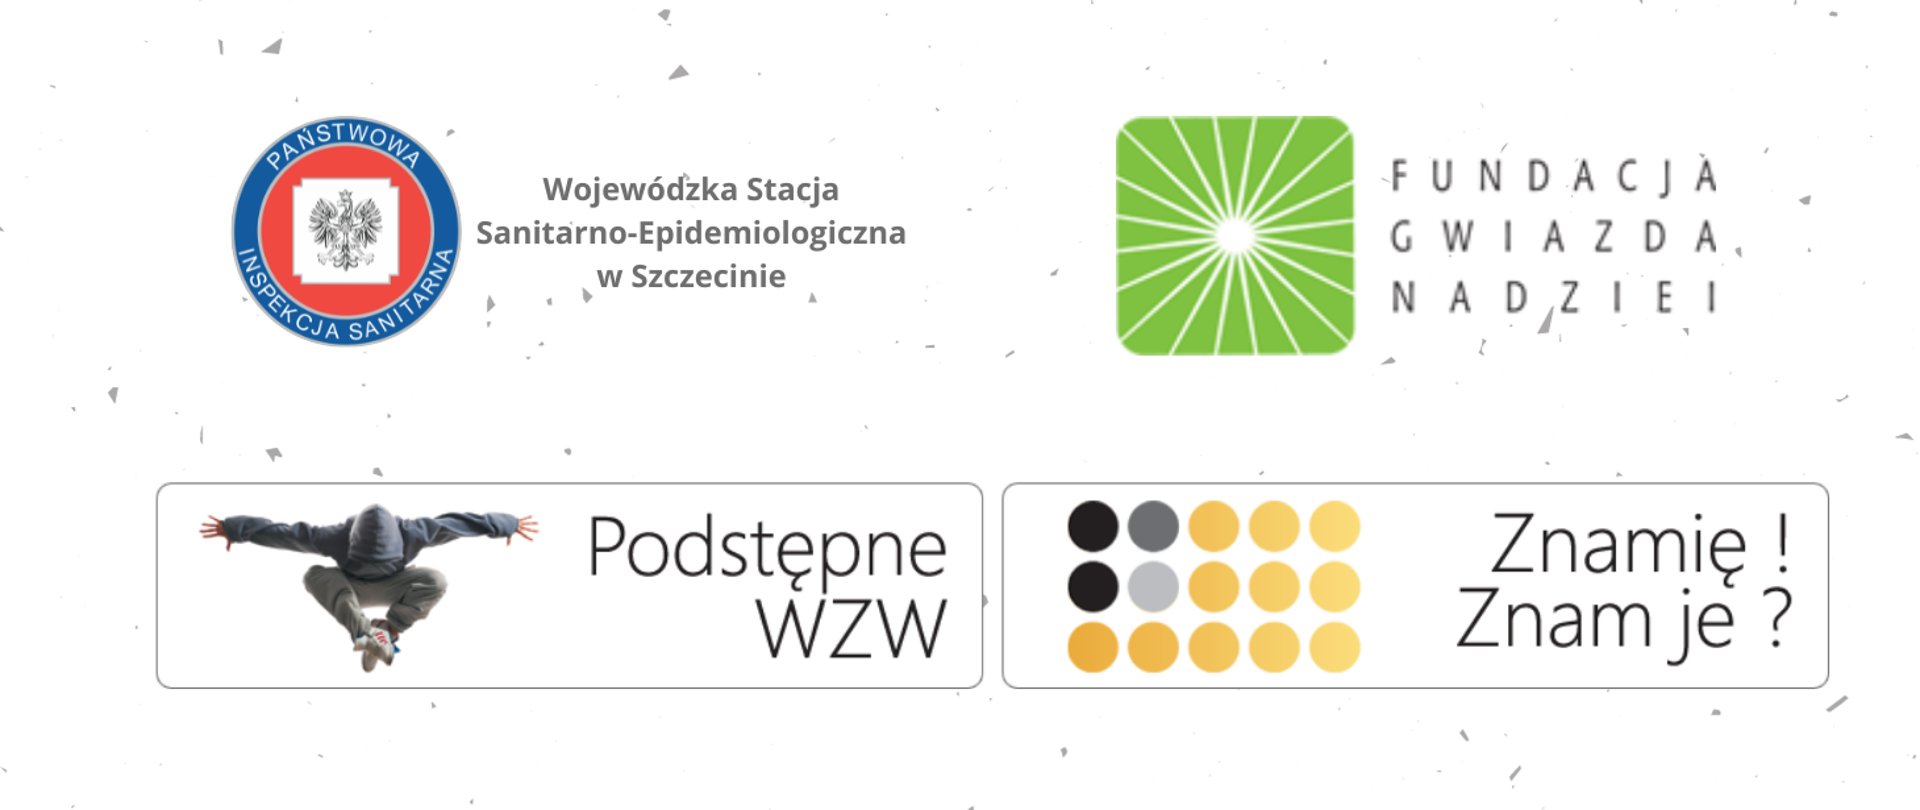 Na grafice znajdują się logo Państwowej Inspekcji Sanitarnej, logo Fundacji Gwiazda Nadziei, nazwy programów „Podstępne WZW” i "Znamię! Znam je?".